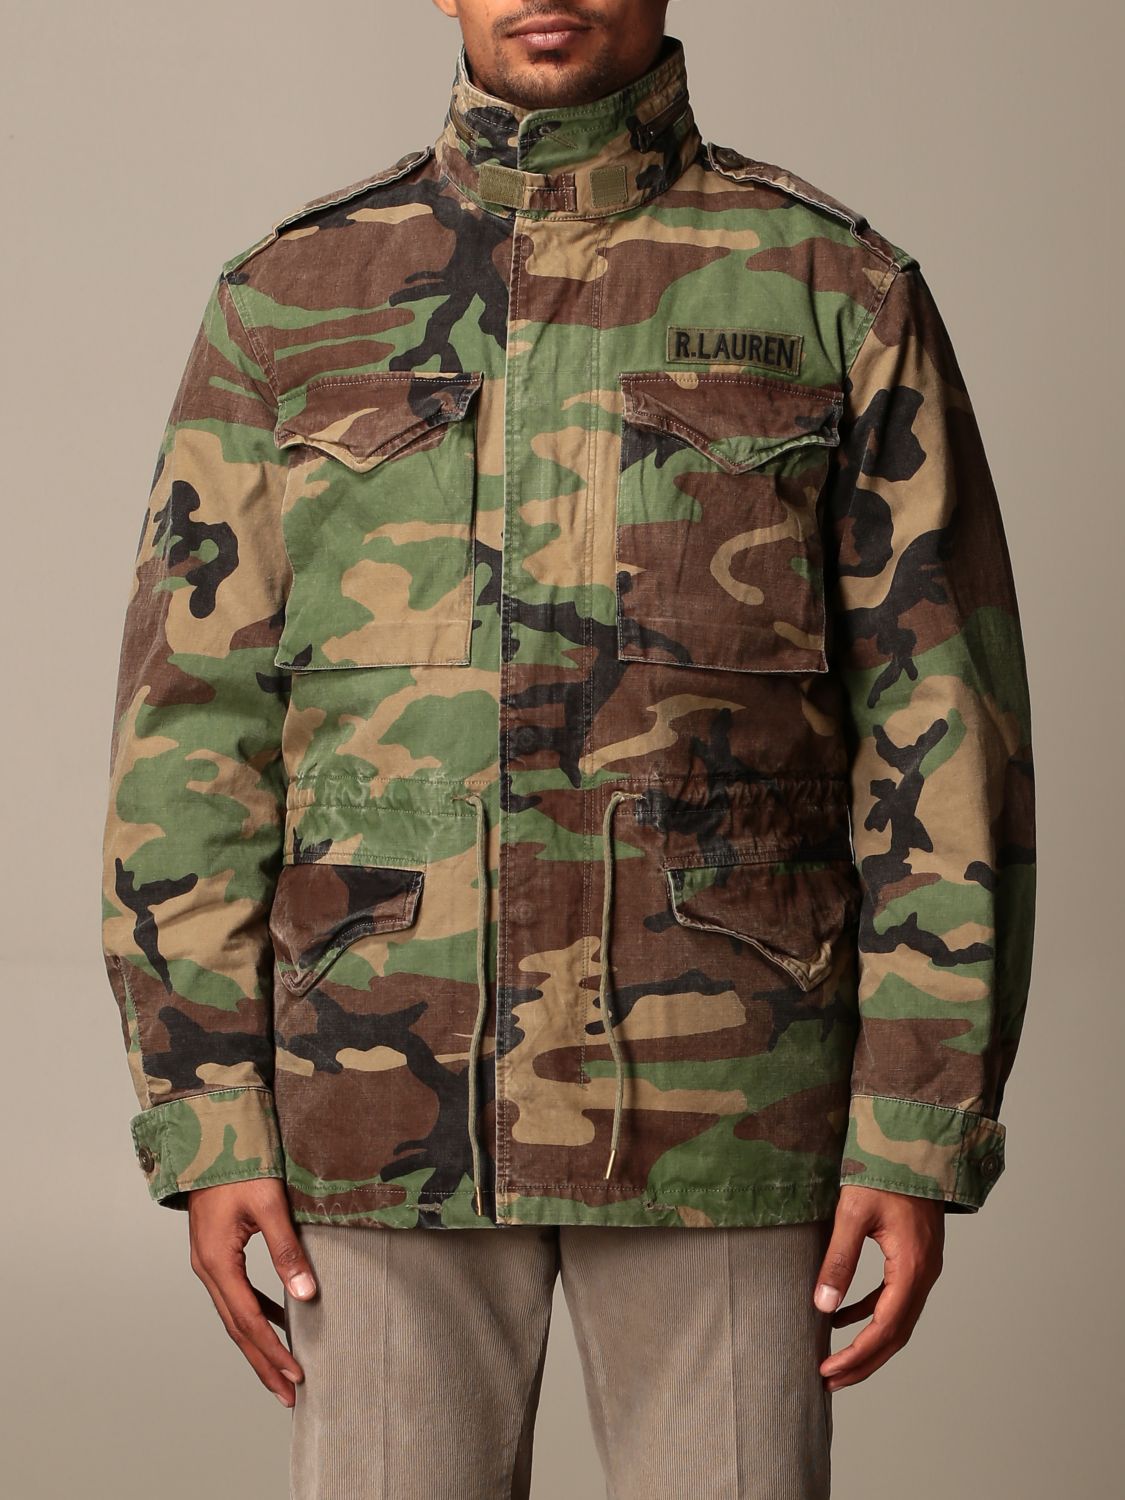 Giacca in spugna con pannelli camouflage Ralph Lauren Uomo Abbigliamento Cappotti e giubbotti Giacche Giacche militari 